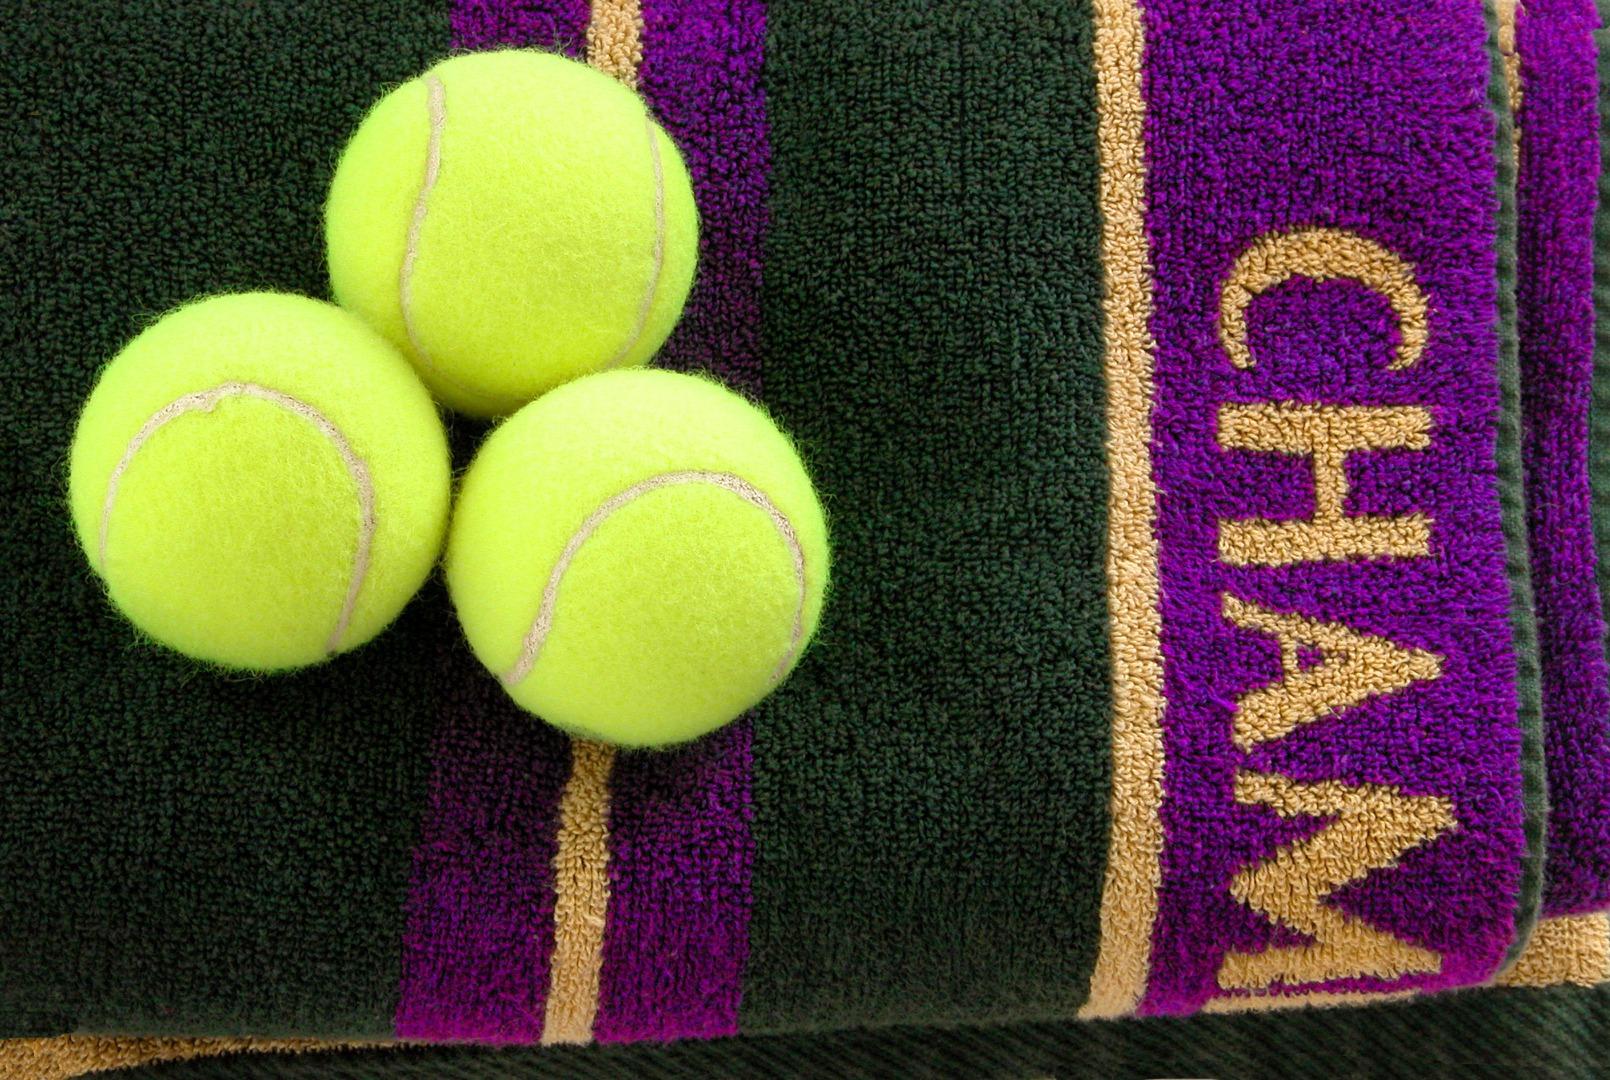 劳力士_劳力士作为温布尔登网球锦标赛大会时计共庆中央球场一百周年纪念|腕表之家xbiao.com